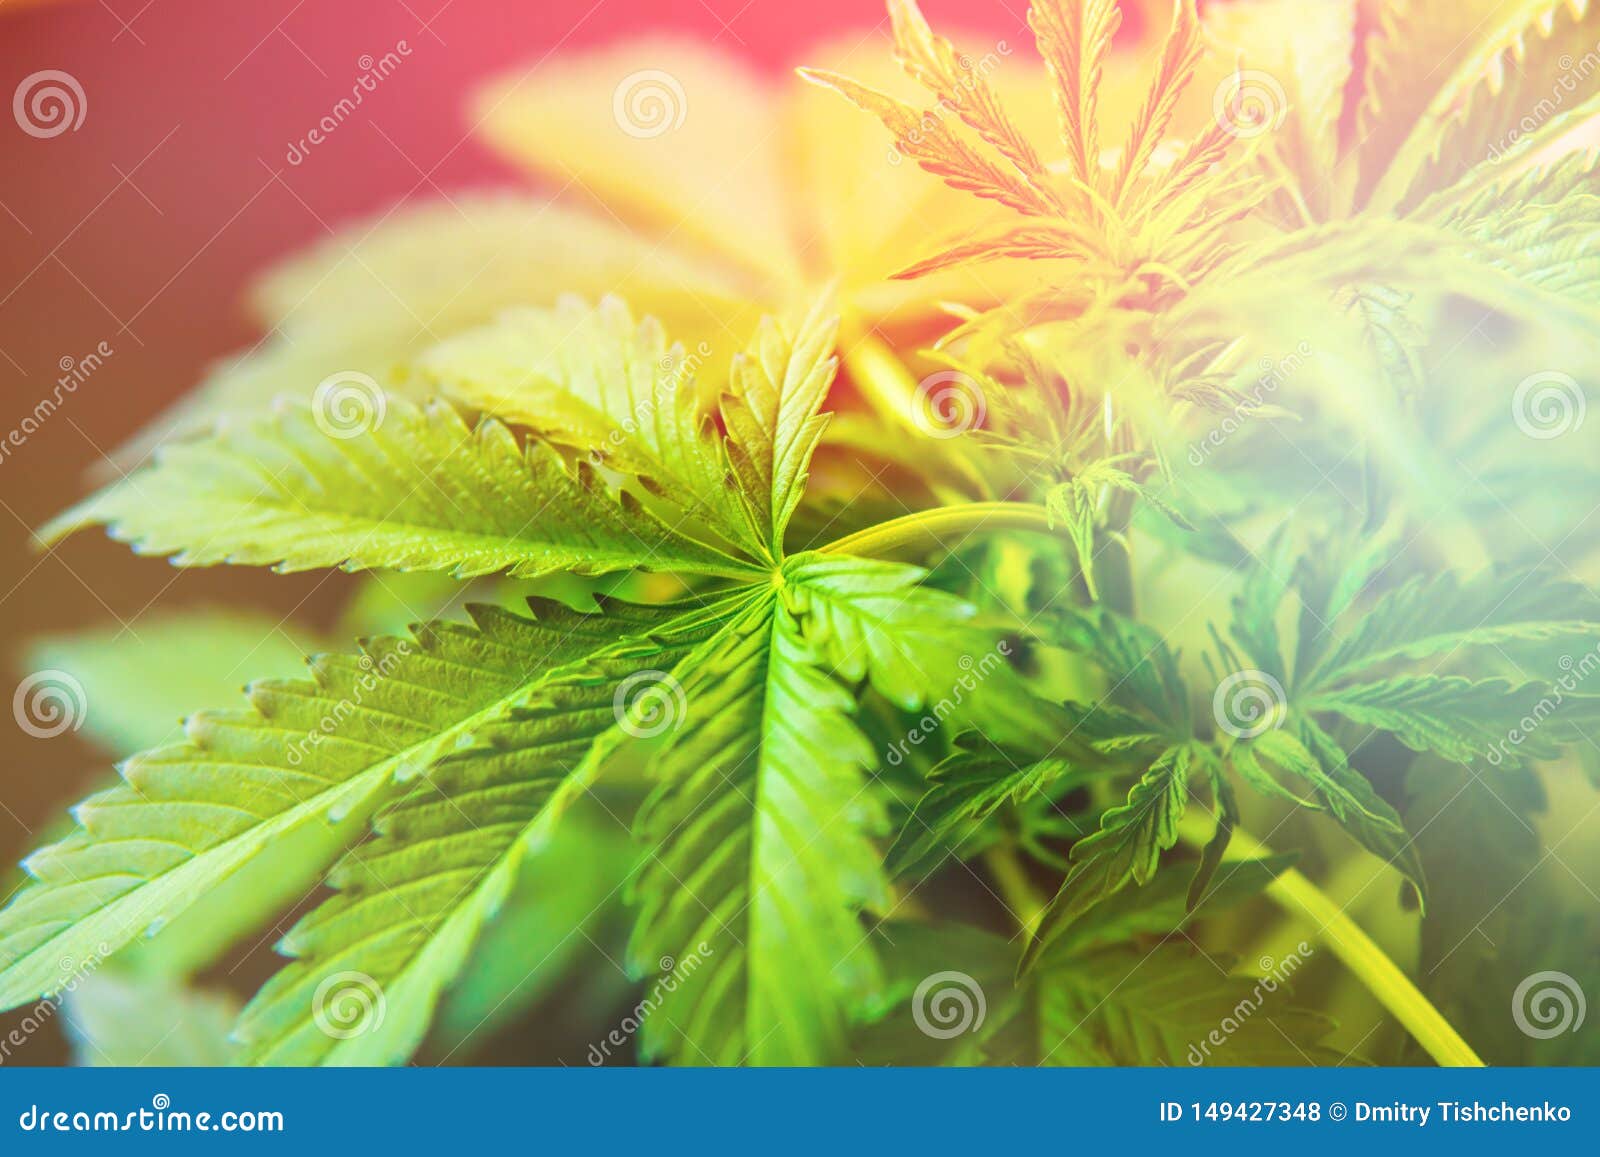 Светлые листья марихуаны купить марихуану на шри ланке